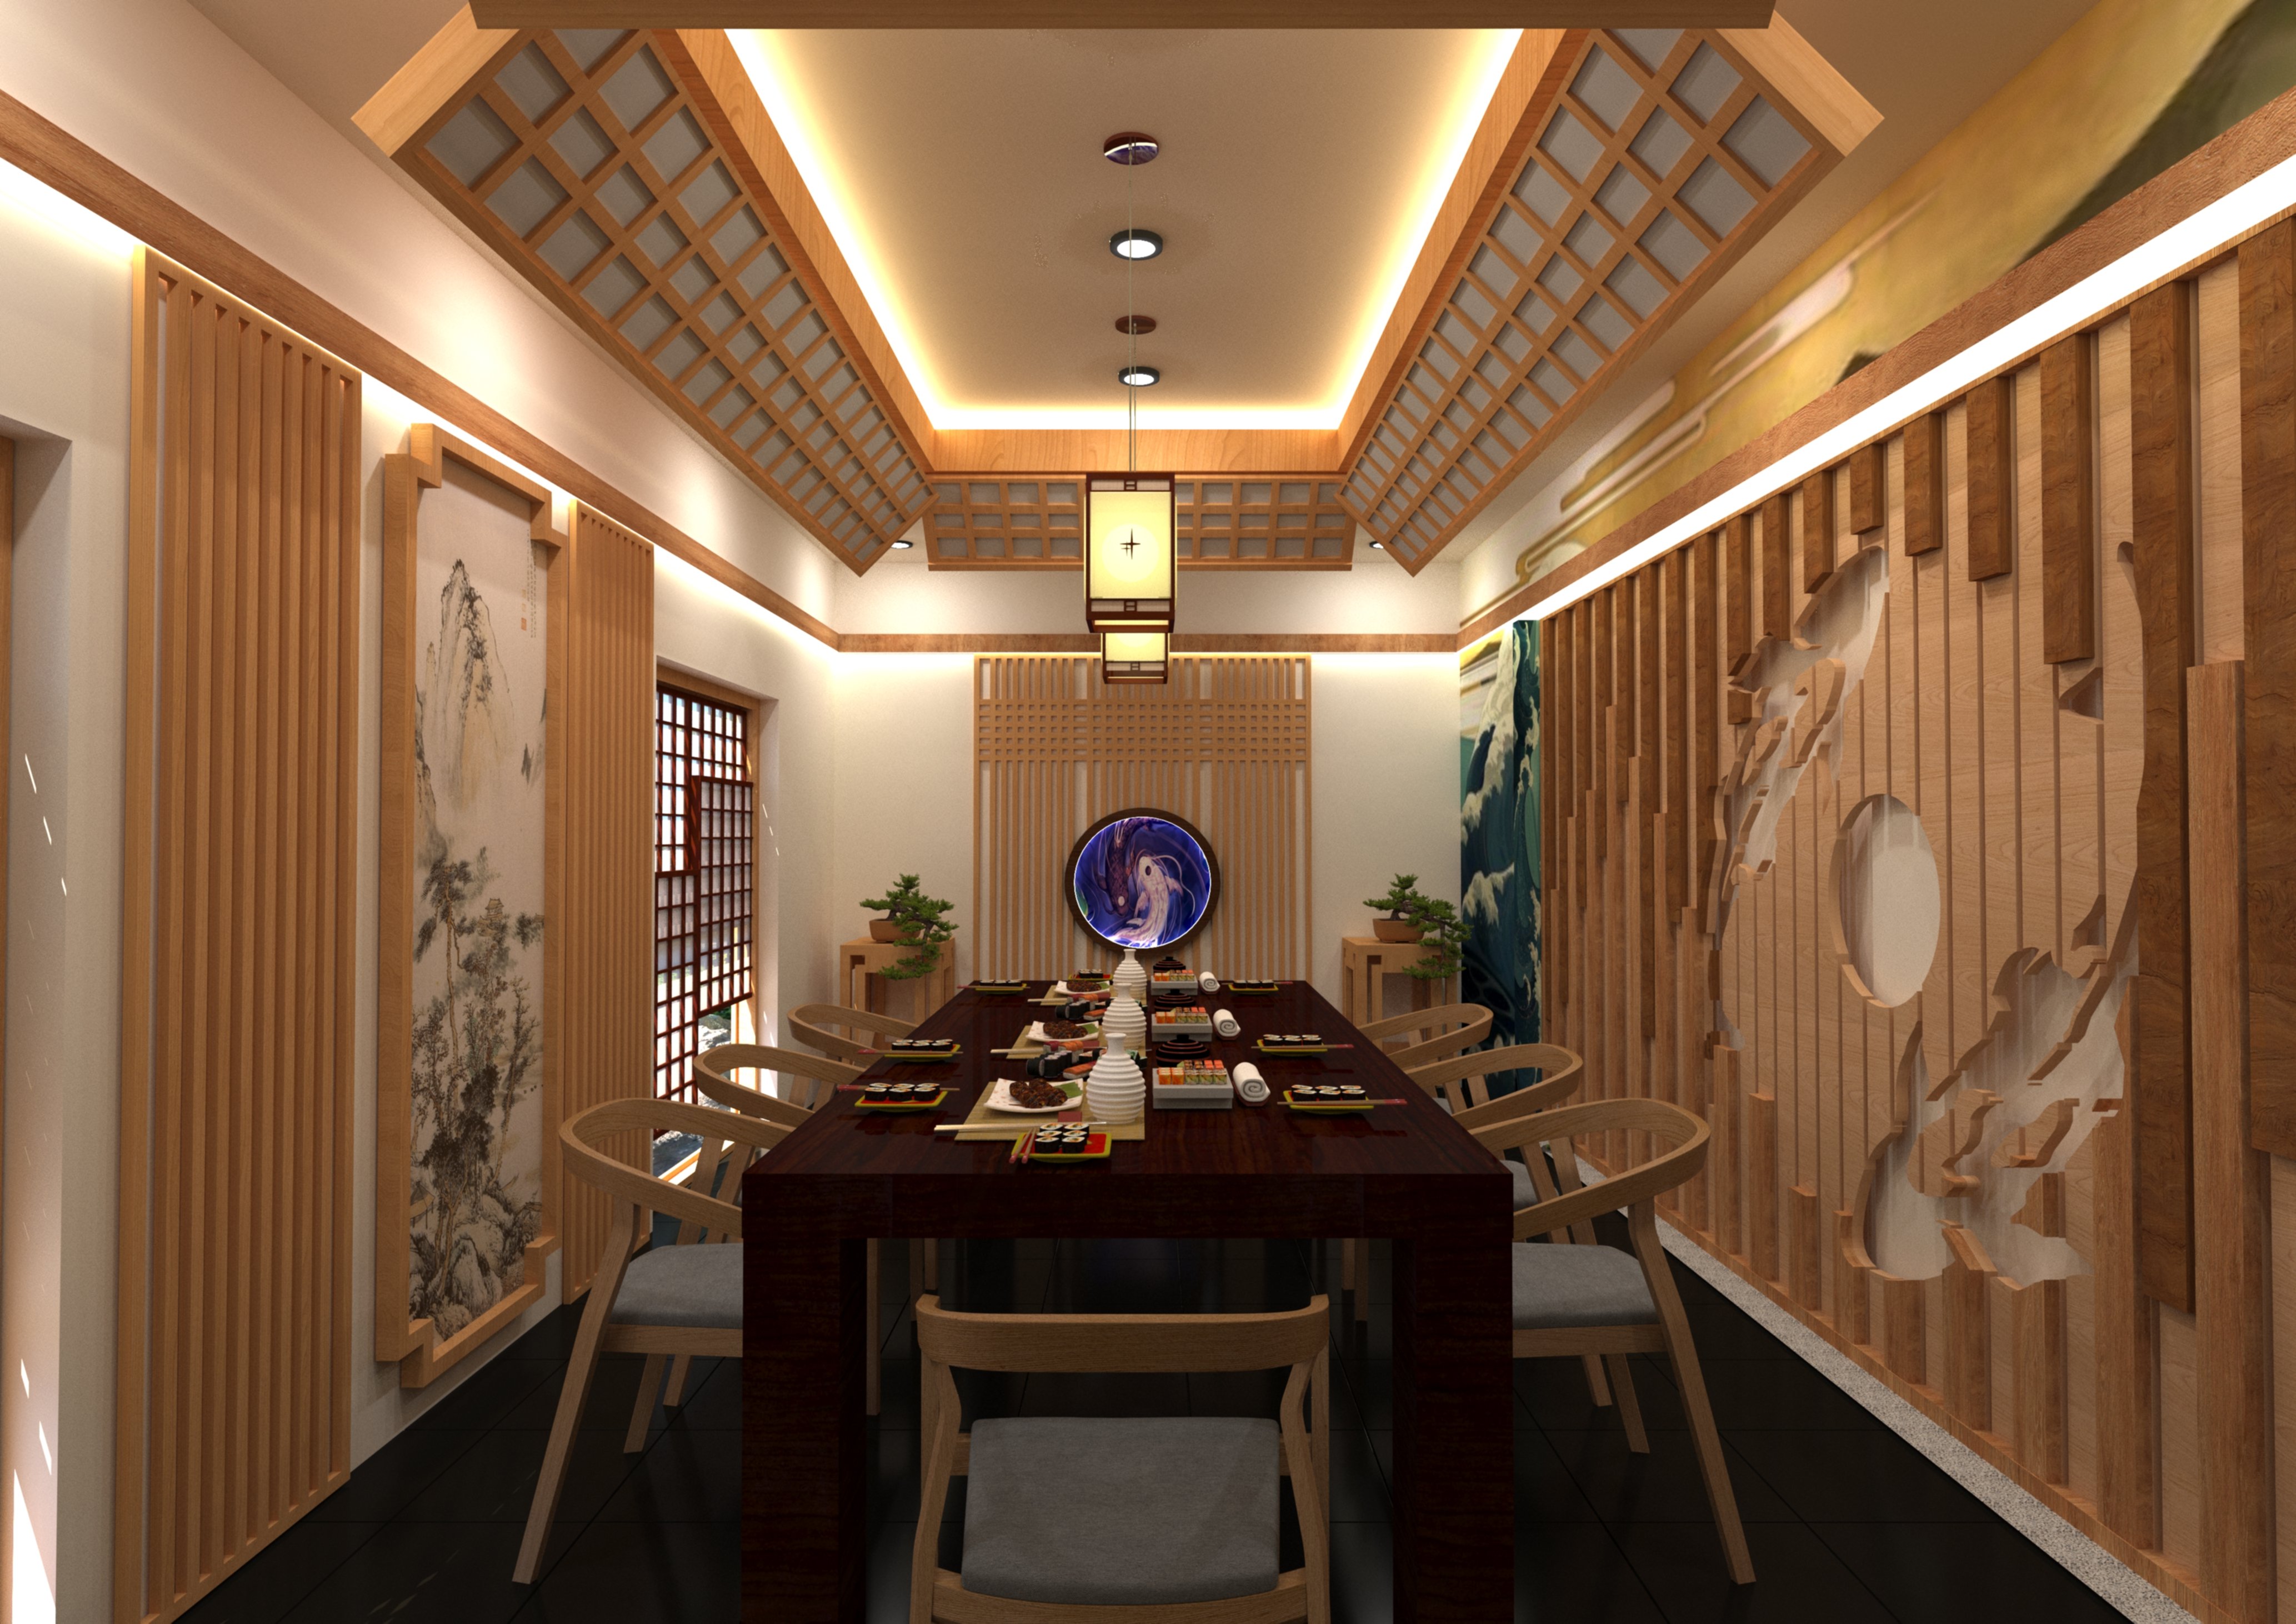 Thiết kế nội thất Nhà Hàng tại Hồ Chí Minh Đồ án thiết kế nhà hàng Nhật Bản 1633334938 1